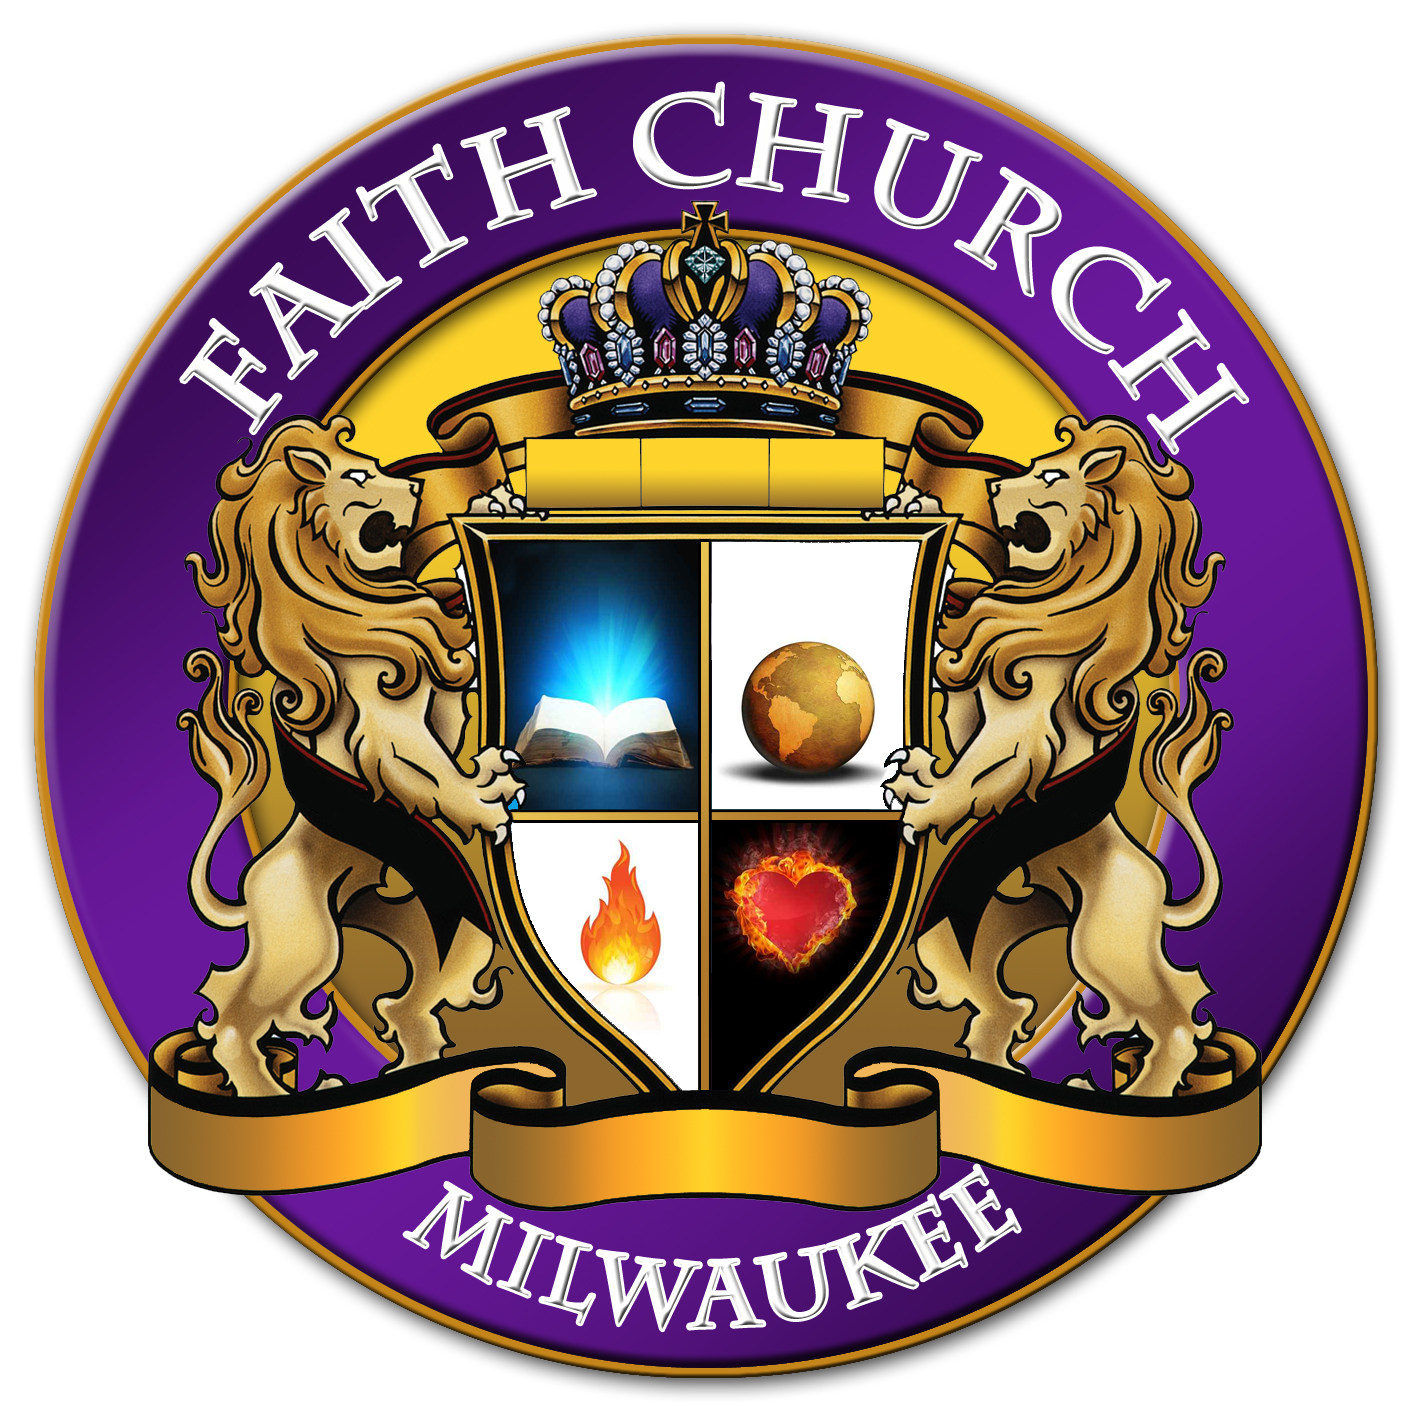 Faith church Milw. - 